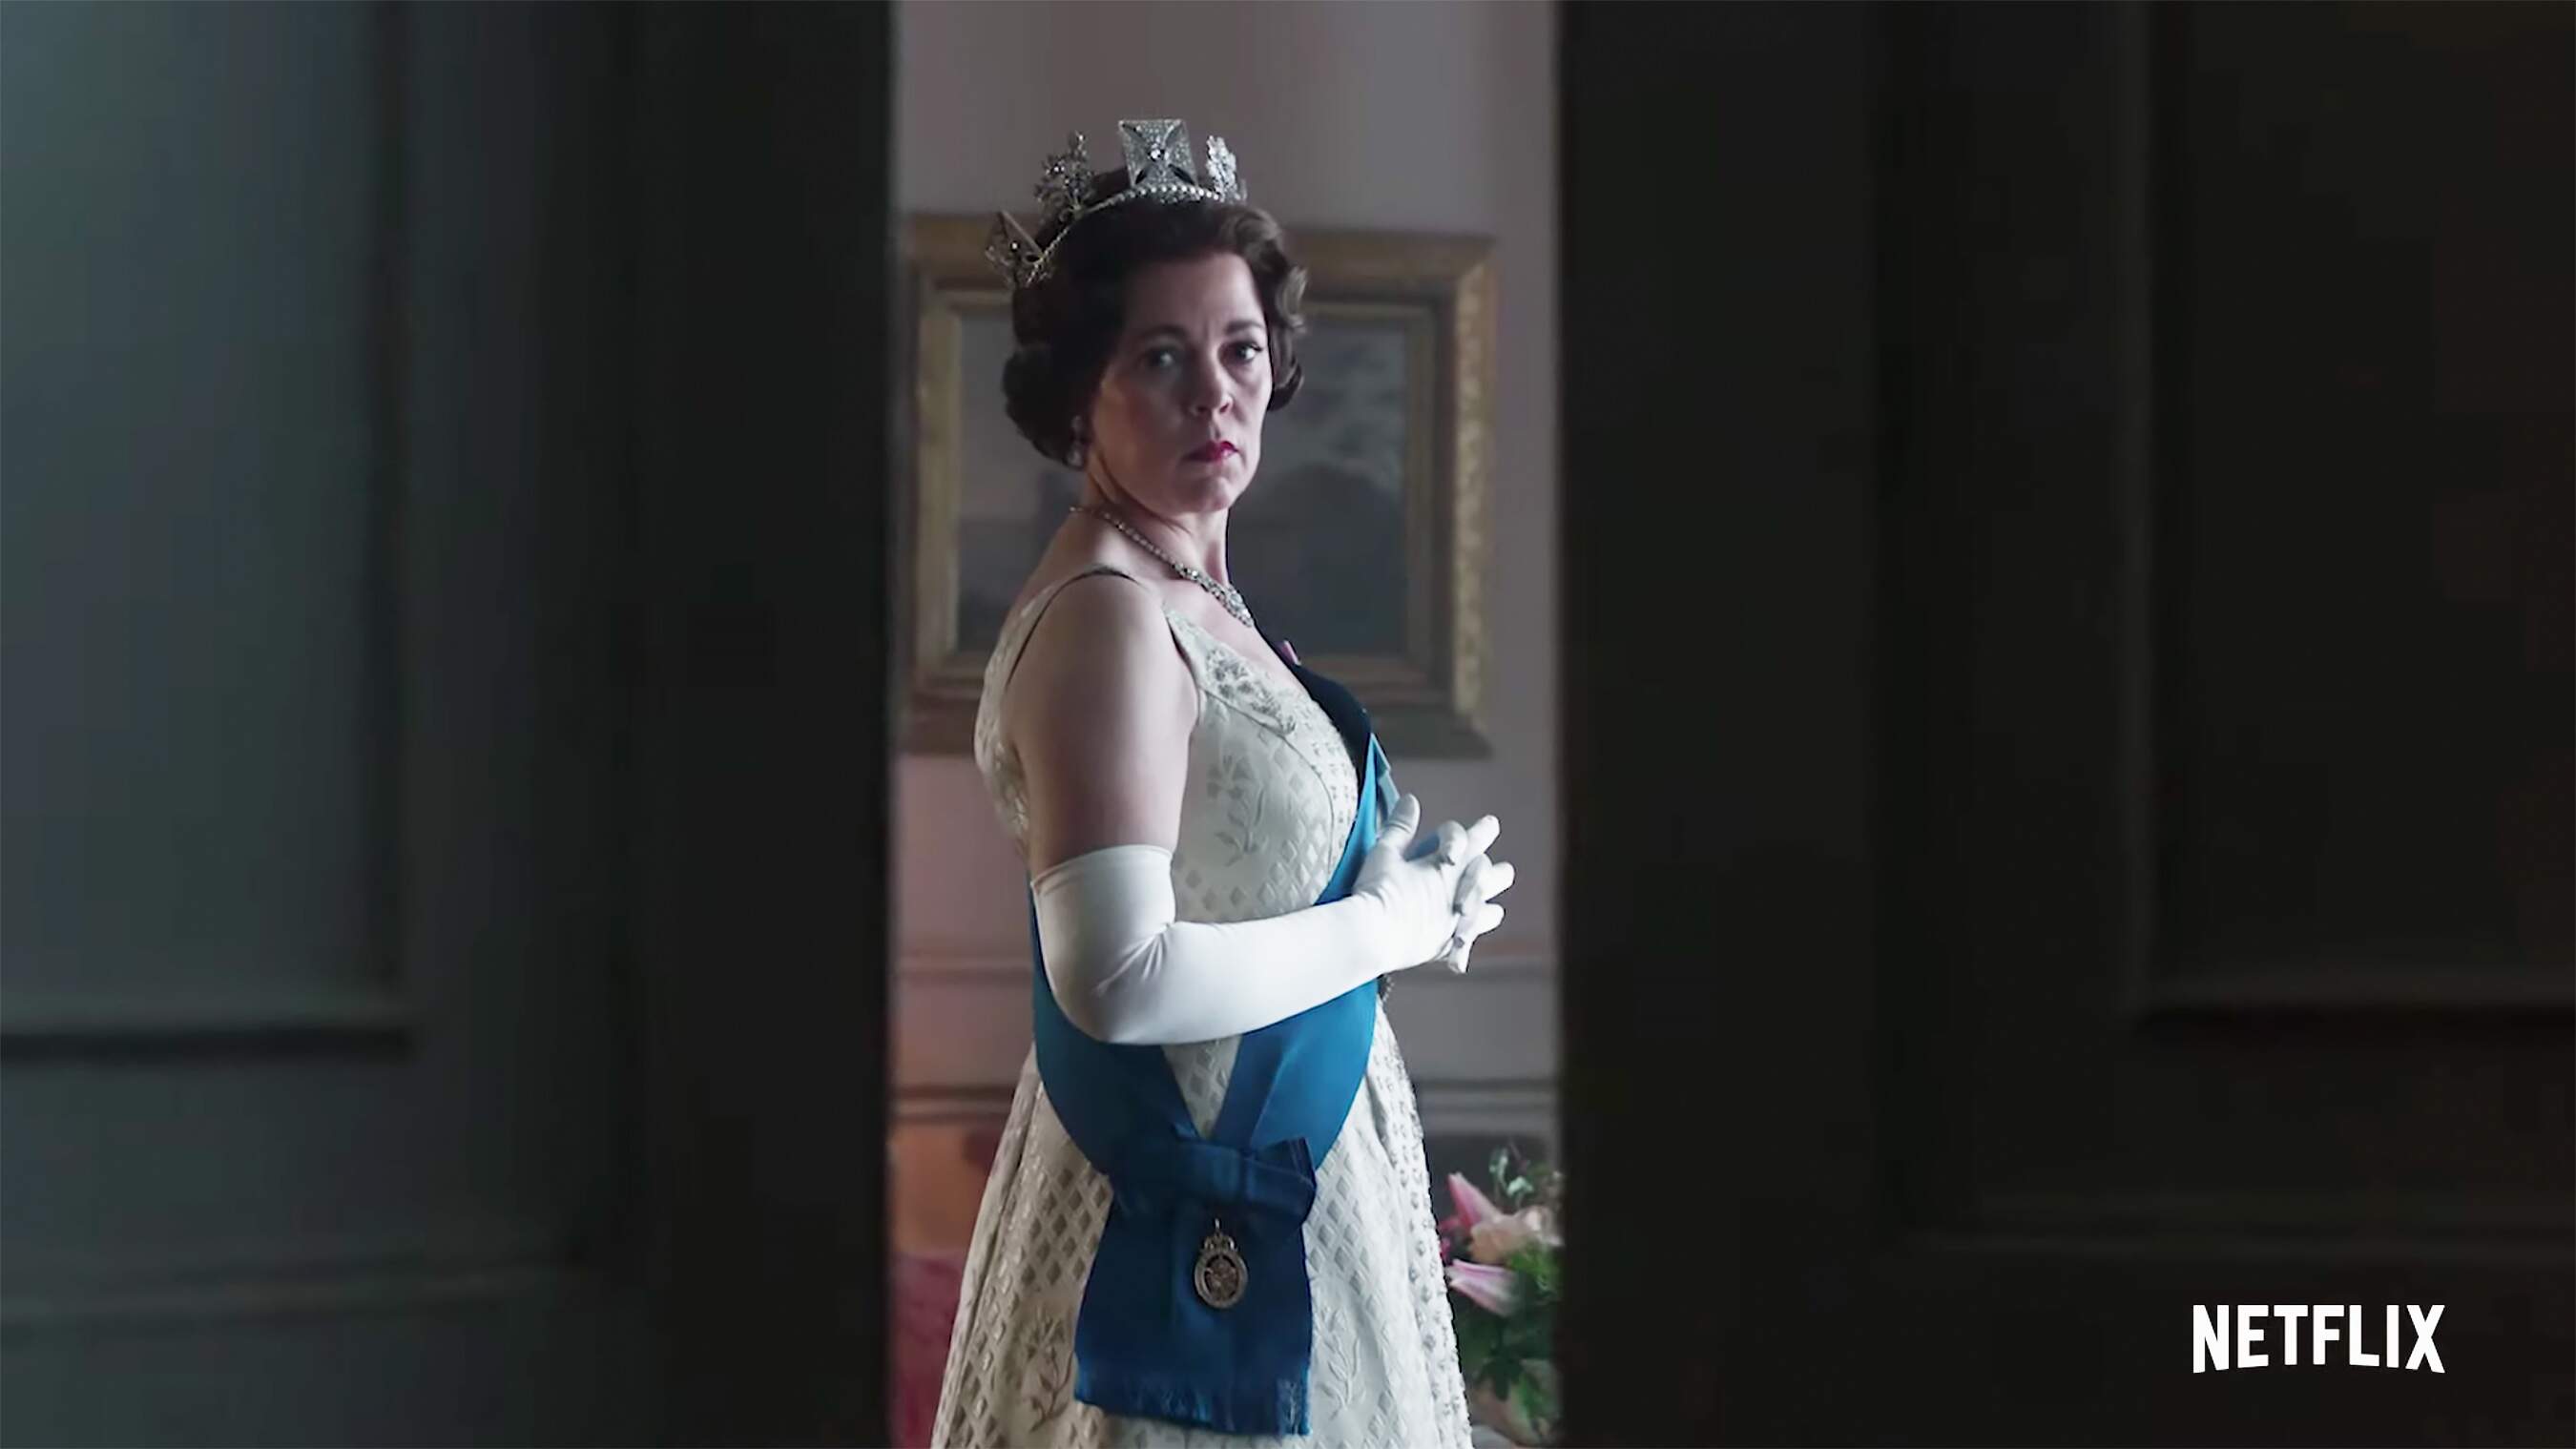 Novo teaser de “The Crown” mostra a mudança da Rainha Elizabeth II - Metropolitana FM